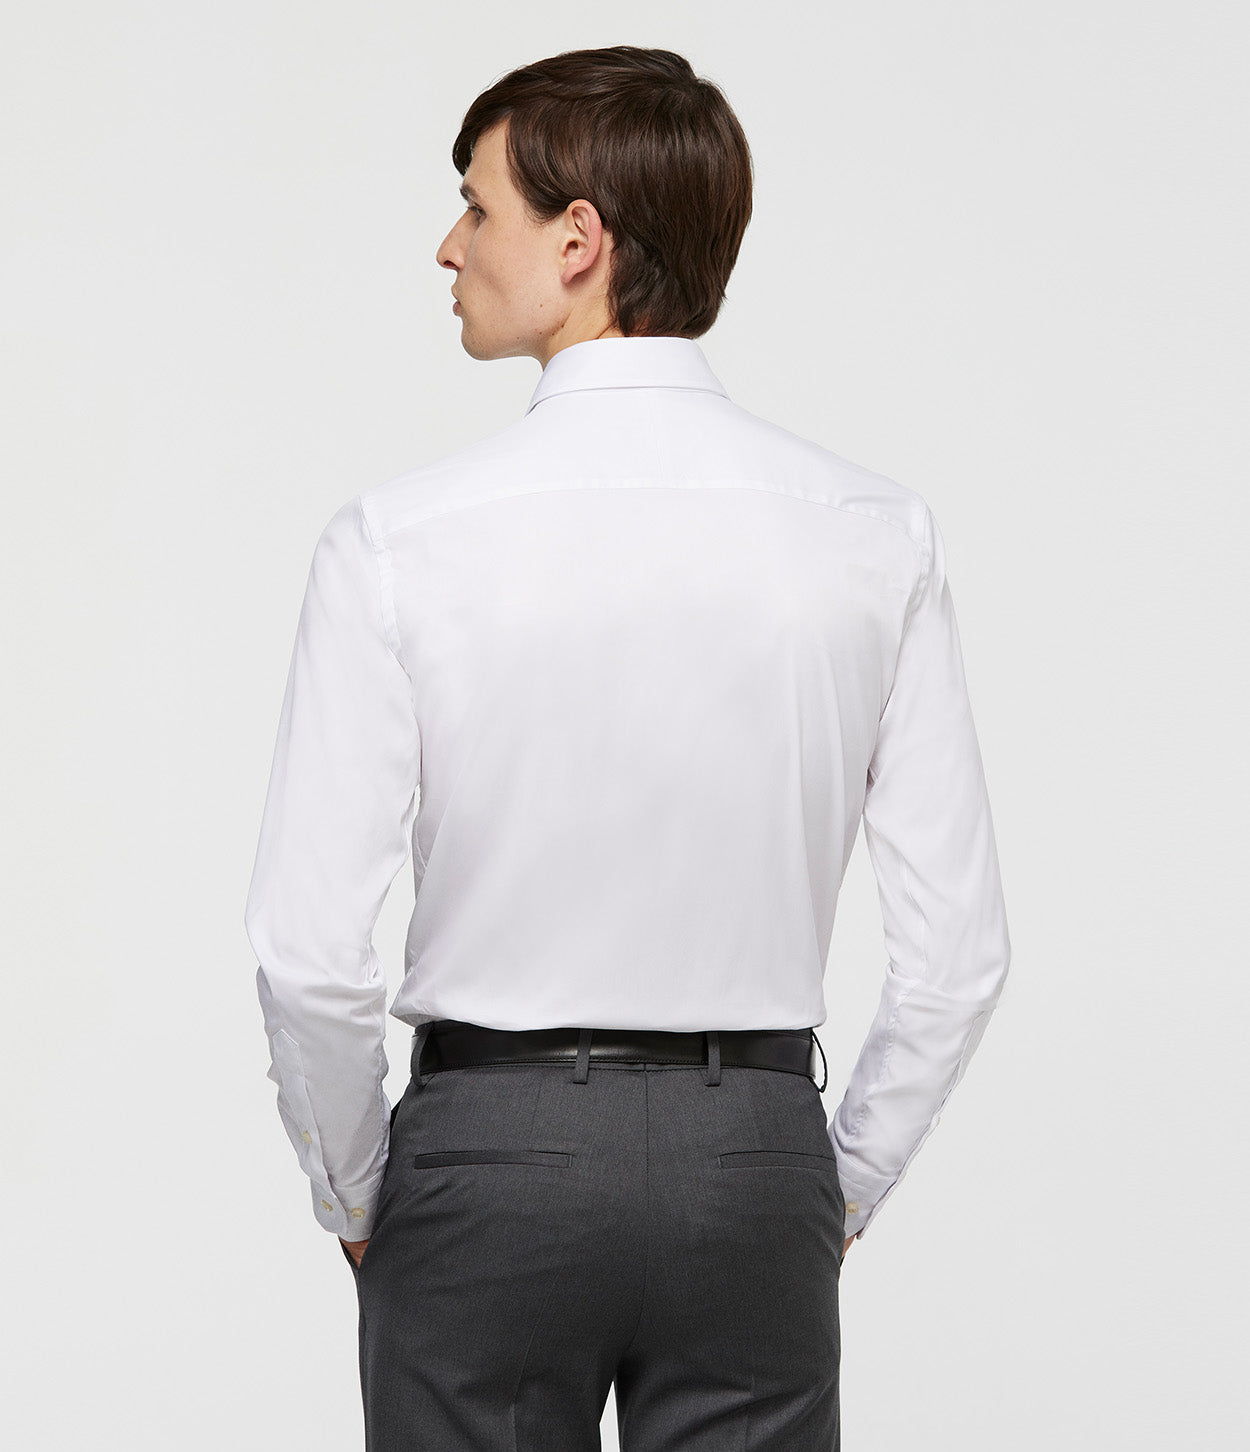 modelo de espaldas con camisa blanca manga larga y manos en los bolsillos